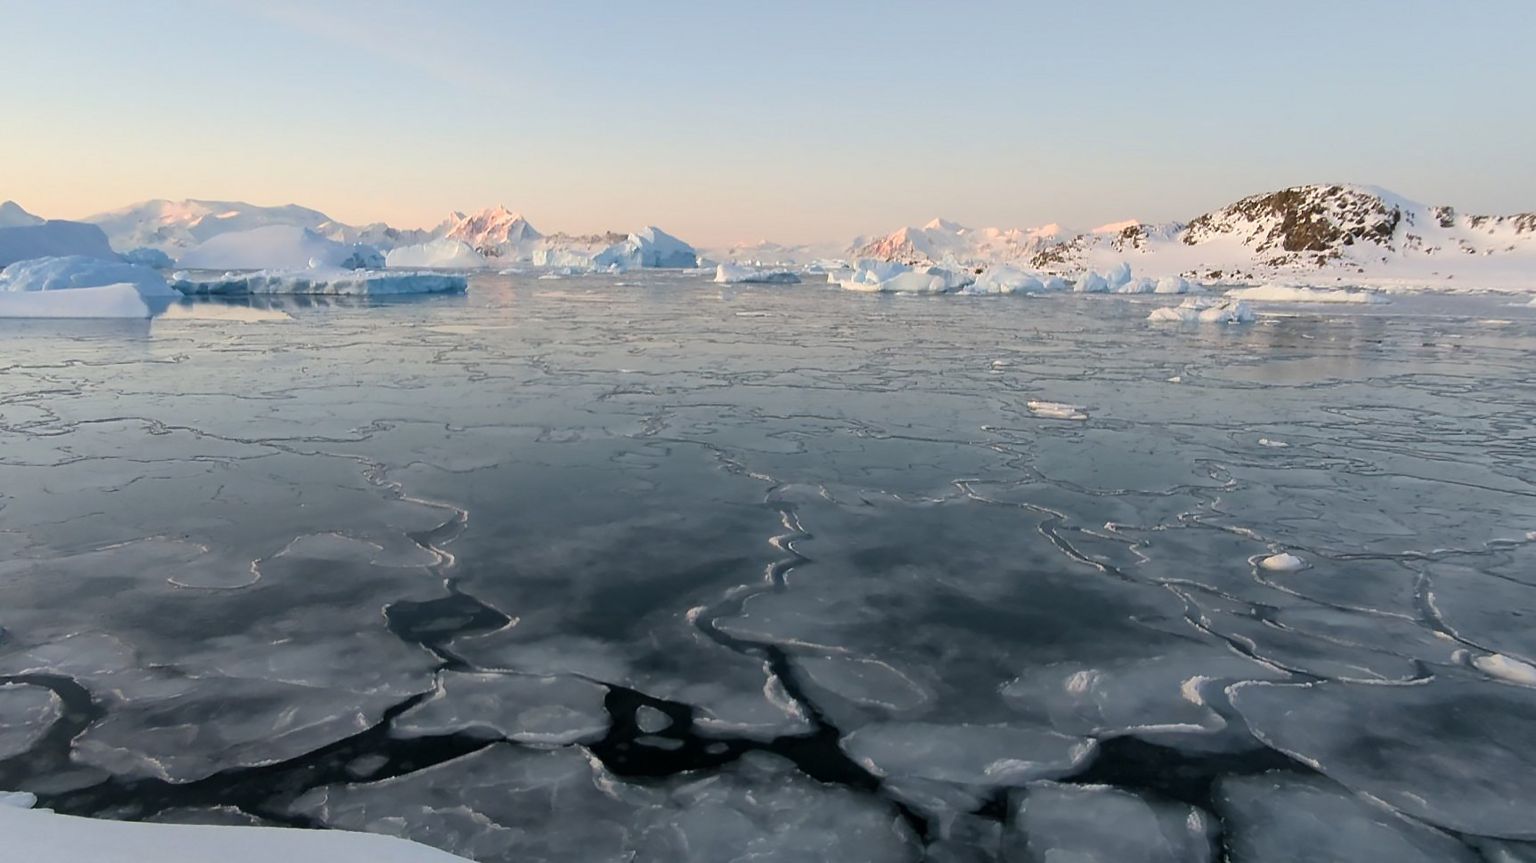 Очень тонкий морской лед на переднем плане - это тип морского льда, называемый «нилас», который образуется при очень слабом ветре условия